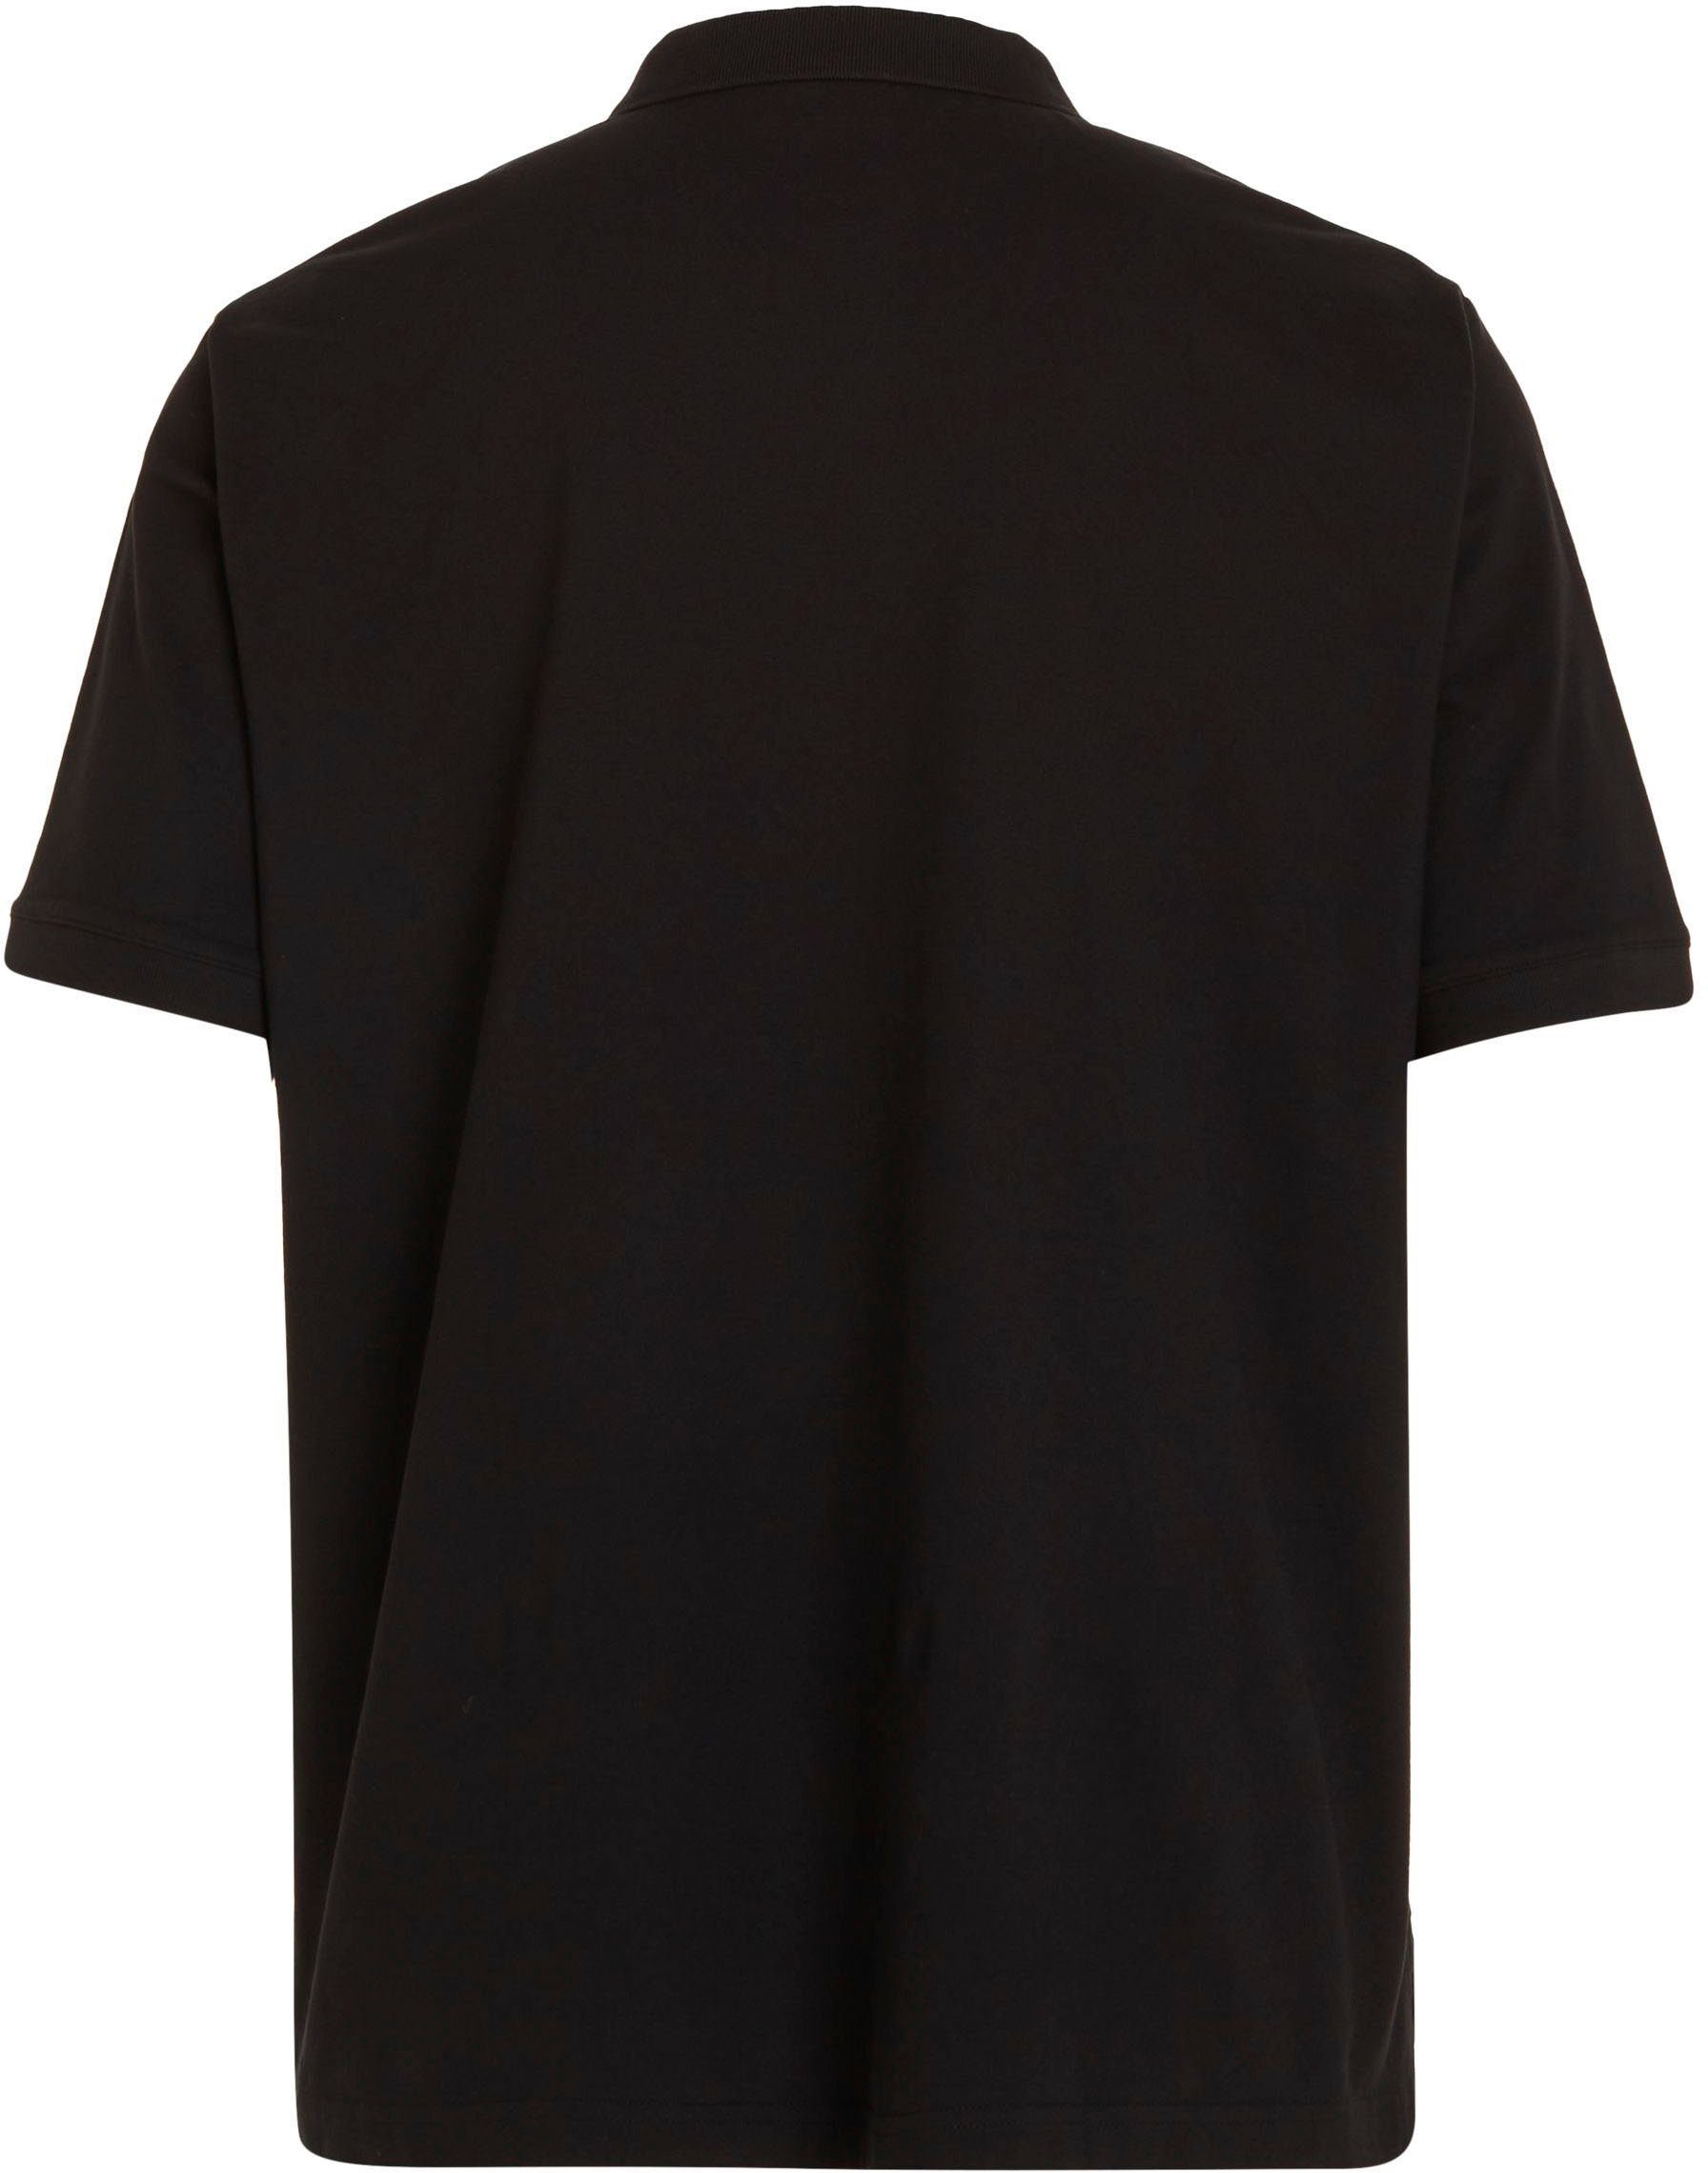 Klein Calvin schwarz Poloshirt Big&Tall Polokragen mit